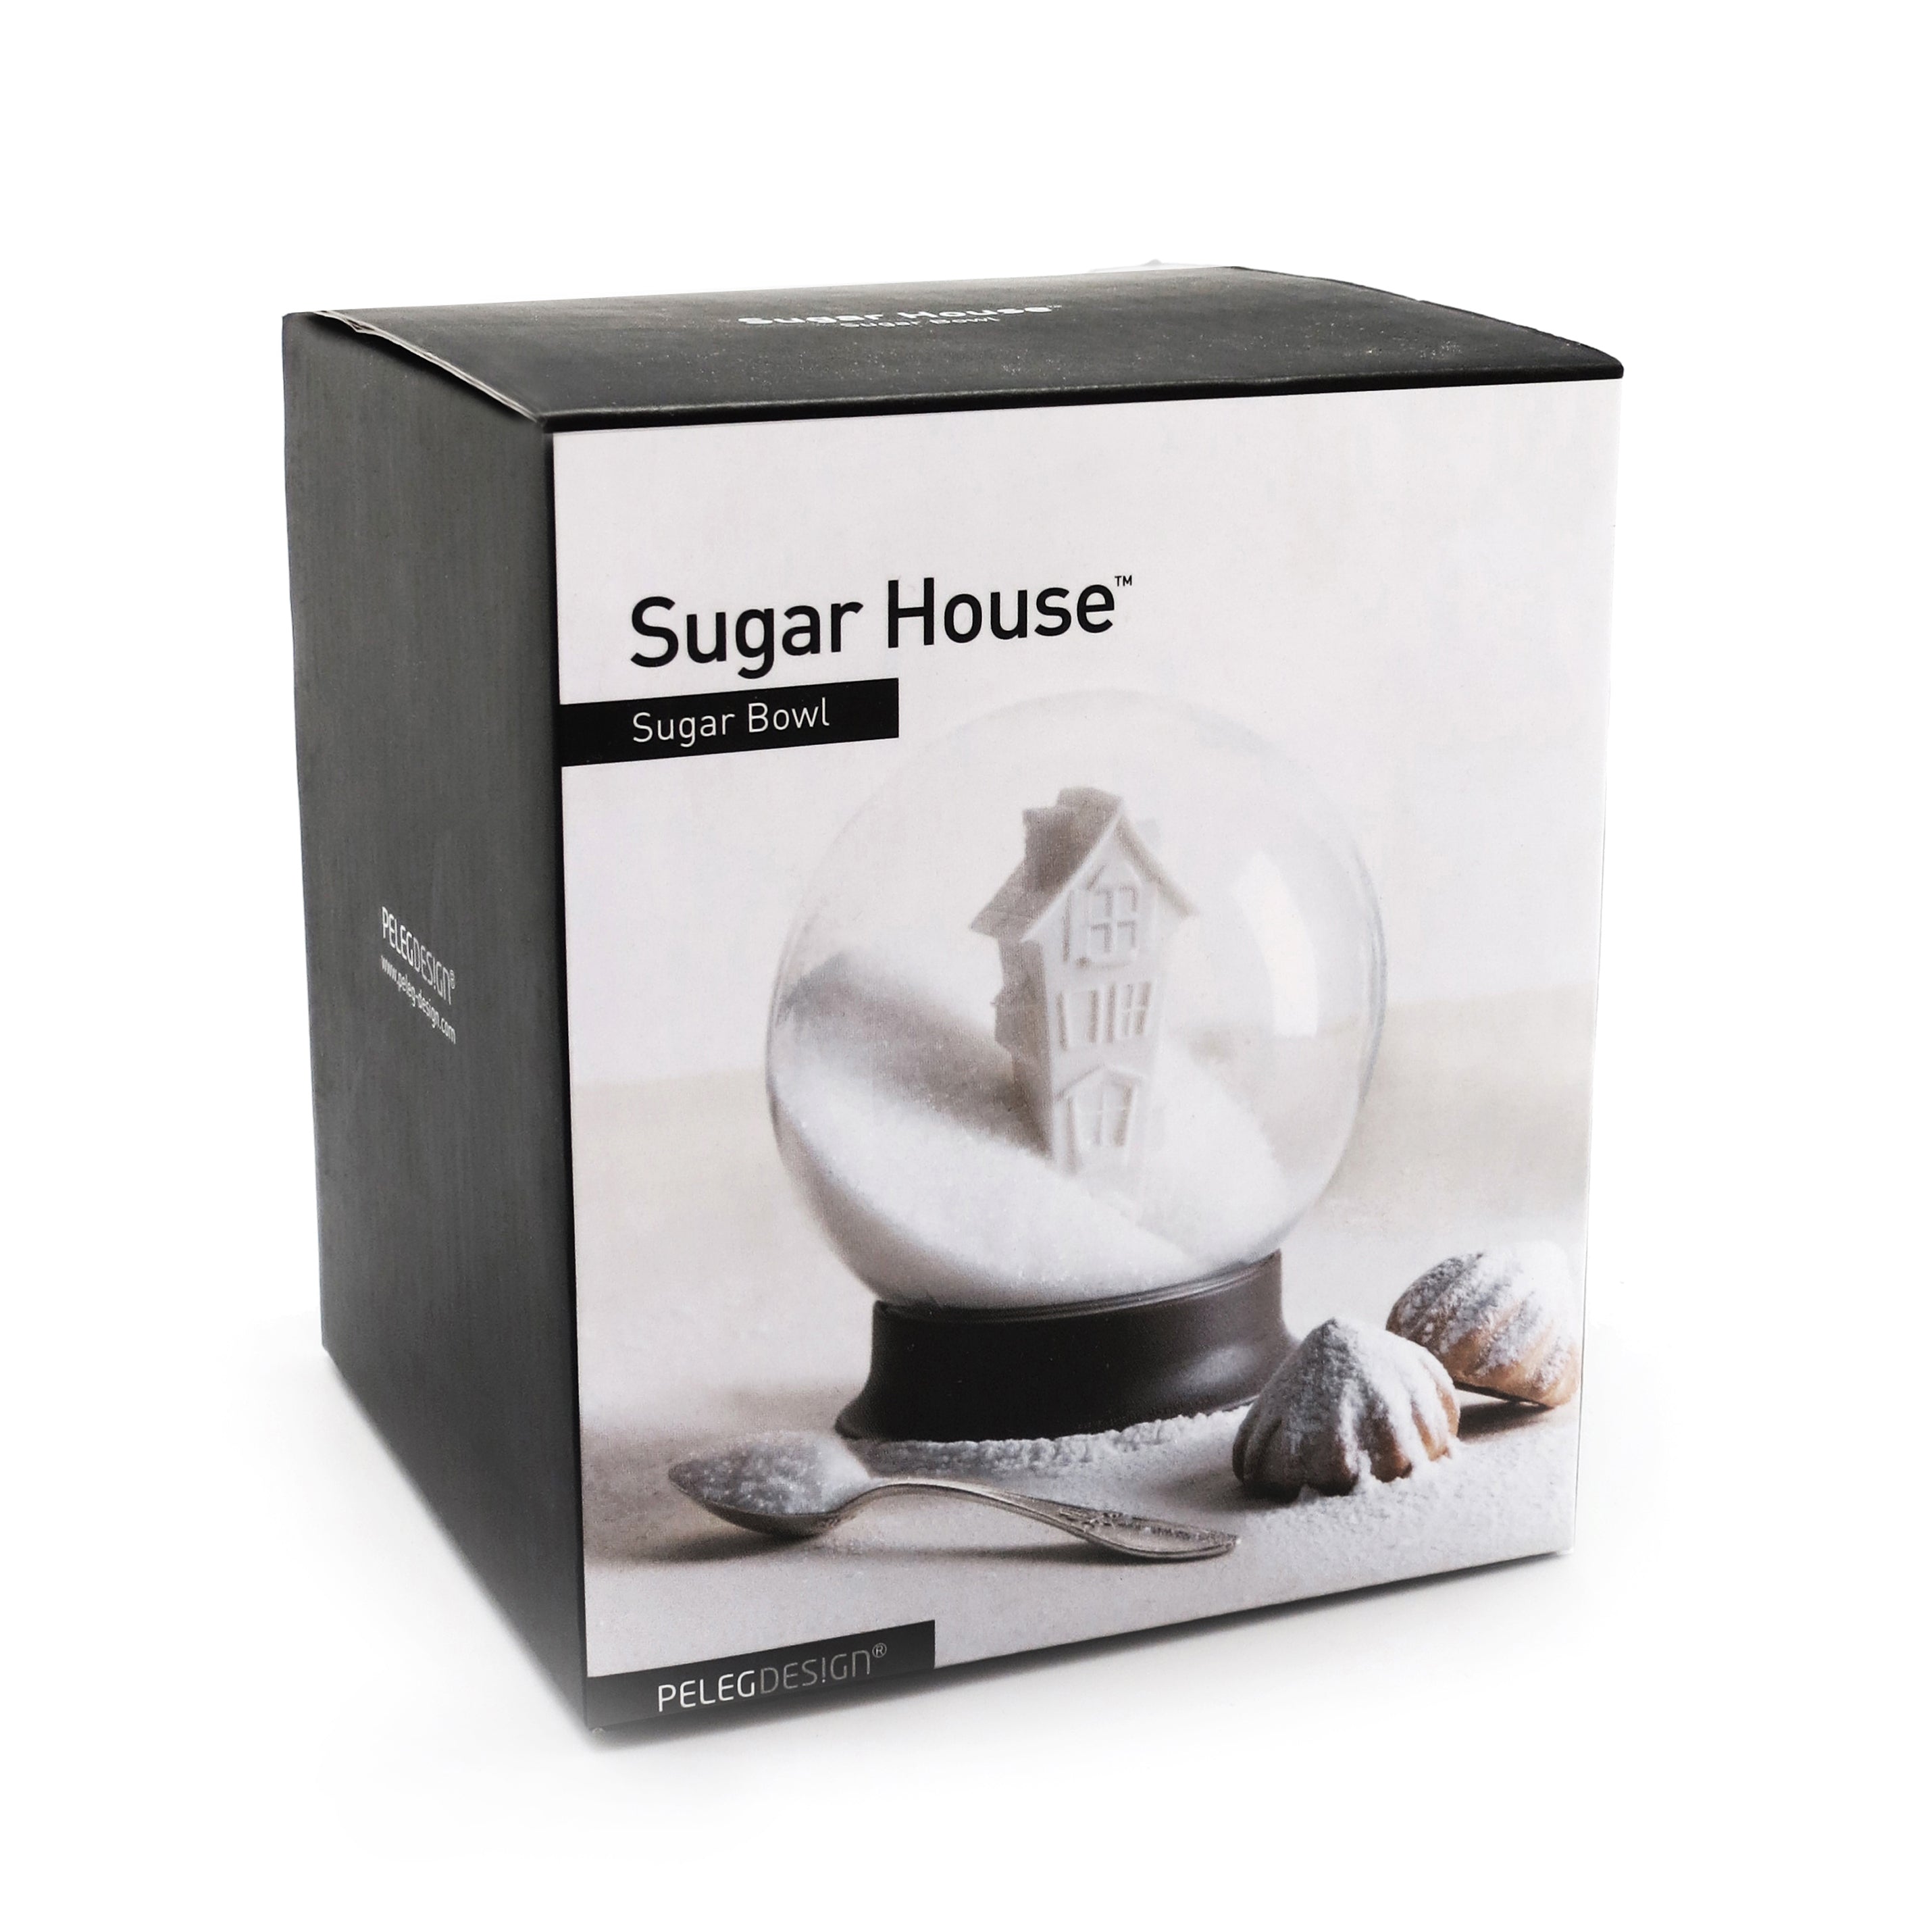 Sugar House Snow Dome Sugar Bowl